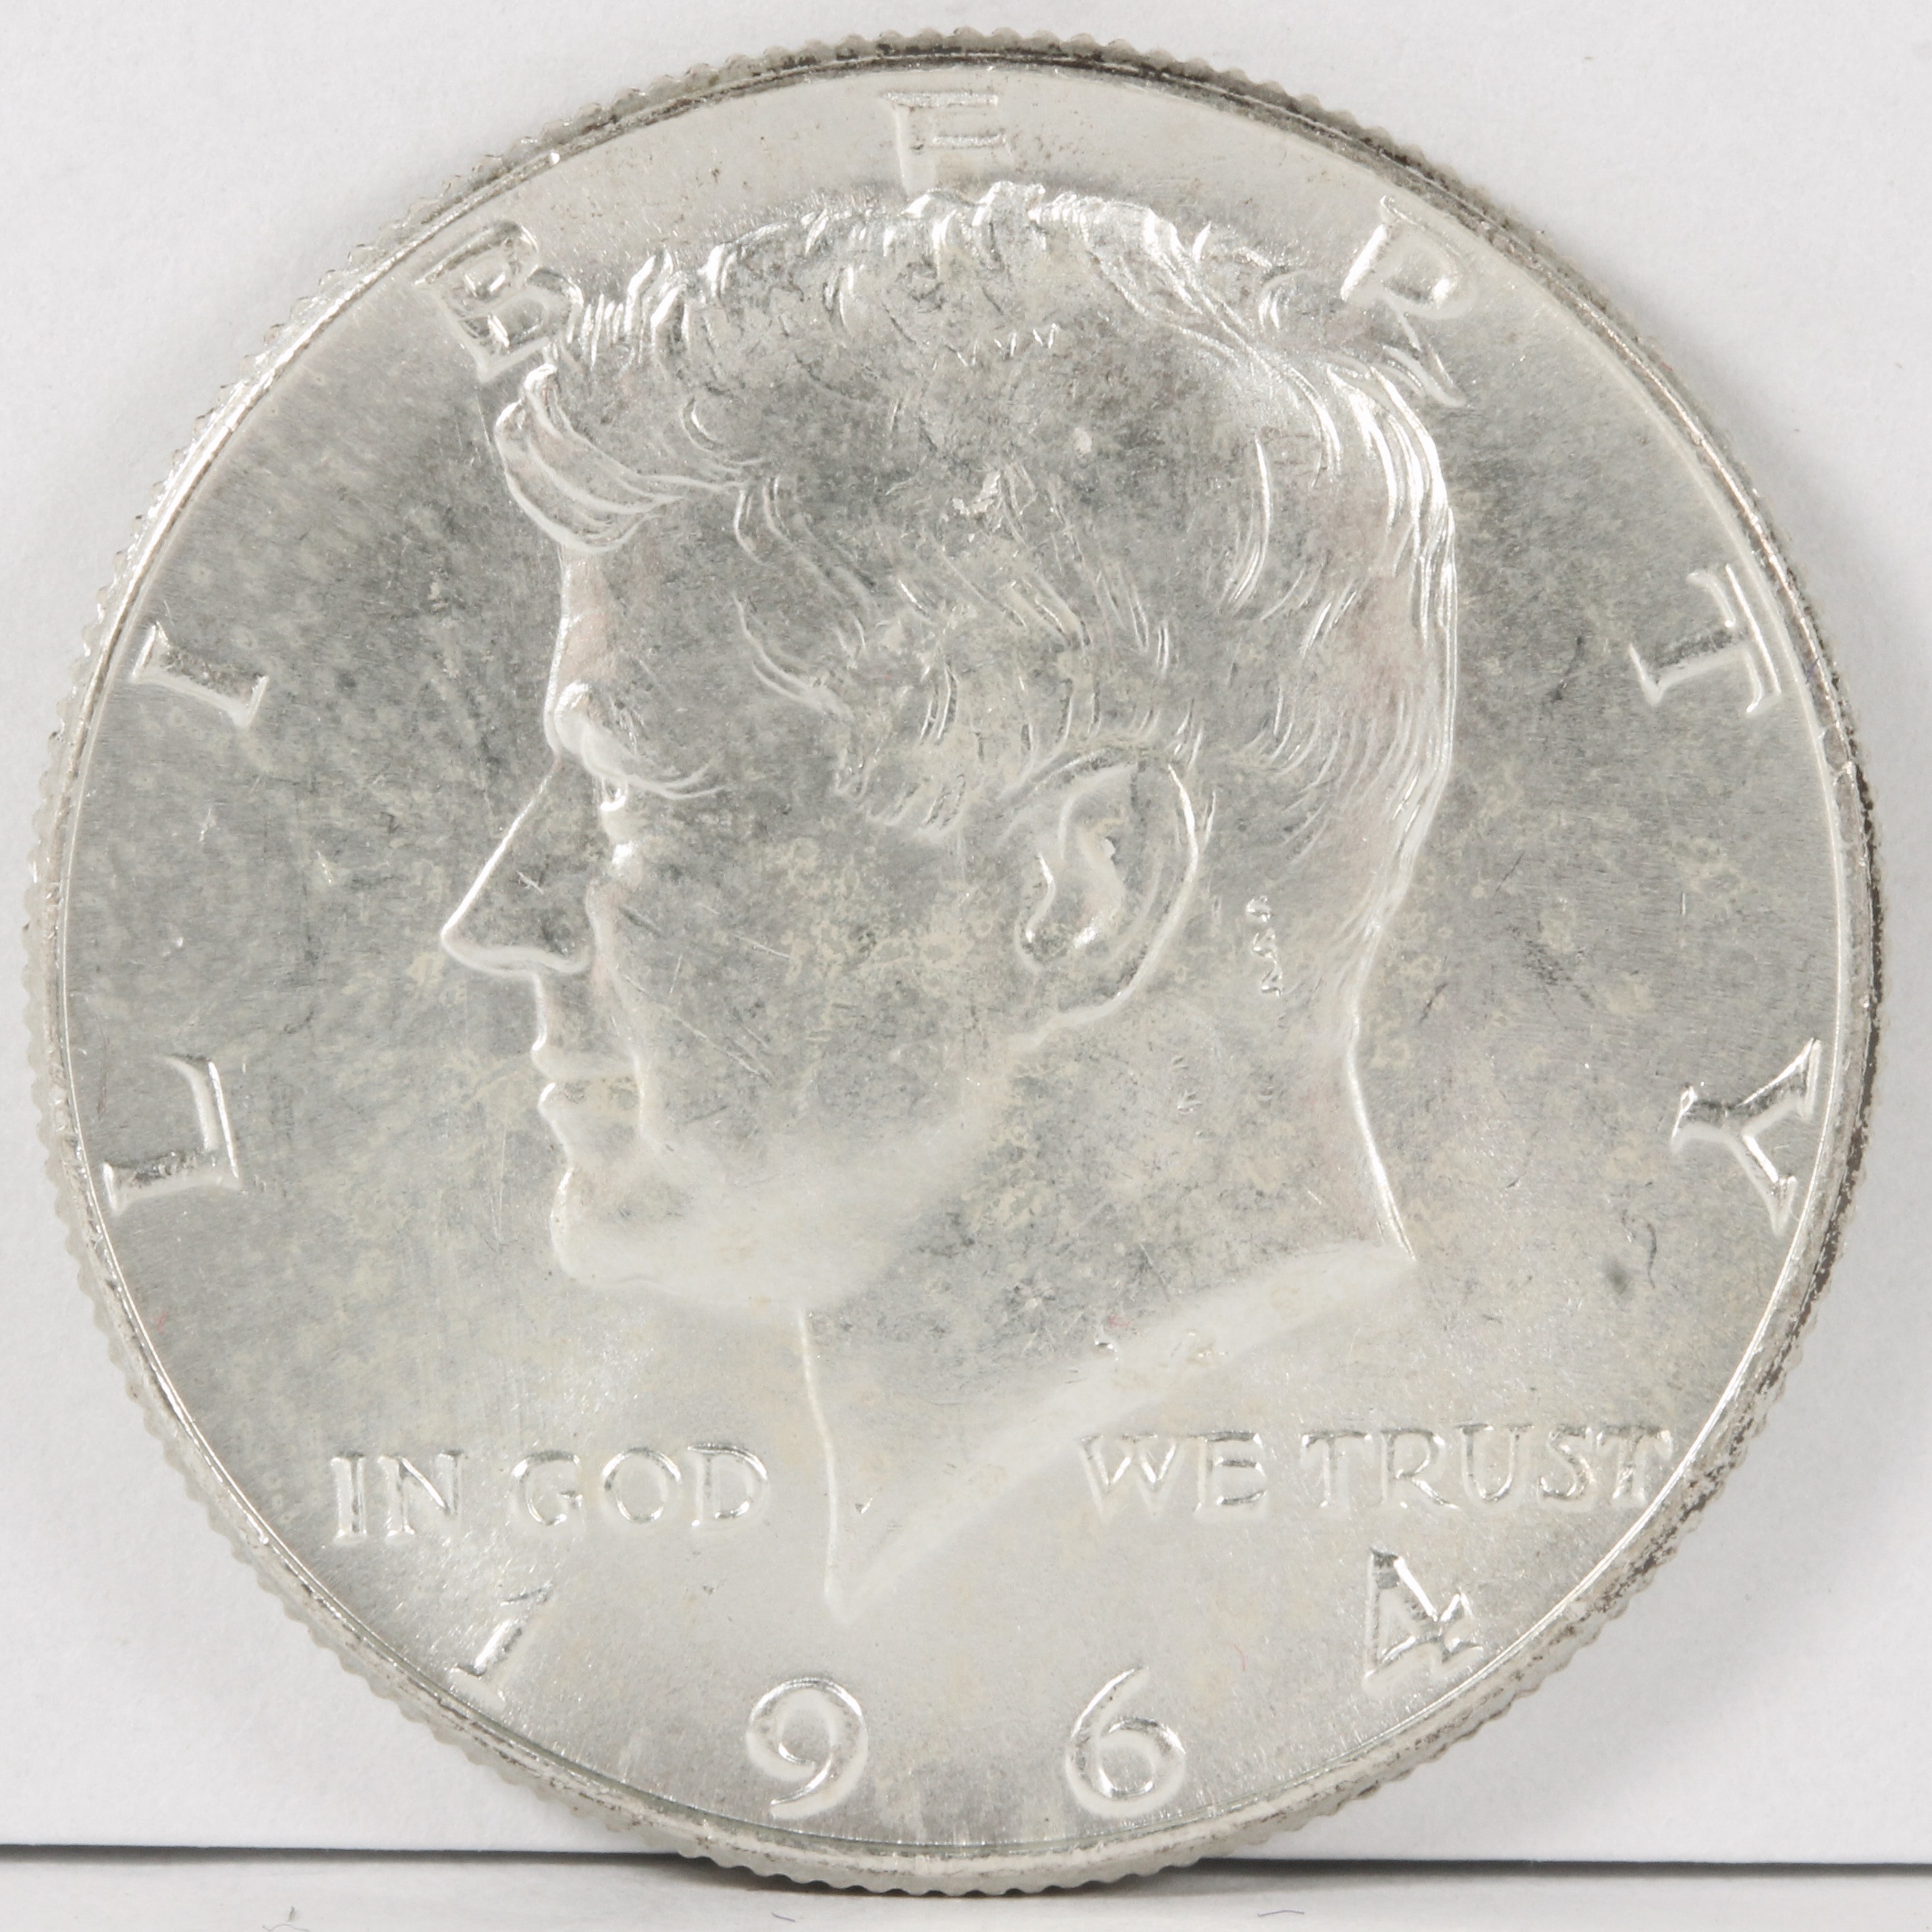 アメリカ 1964年 ケネディコイン HALF DOLLAR 銀貨 UNC | ミスターコインズ